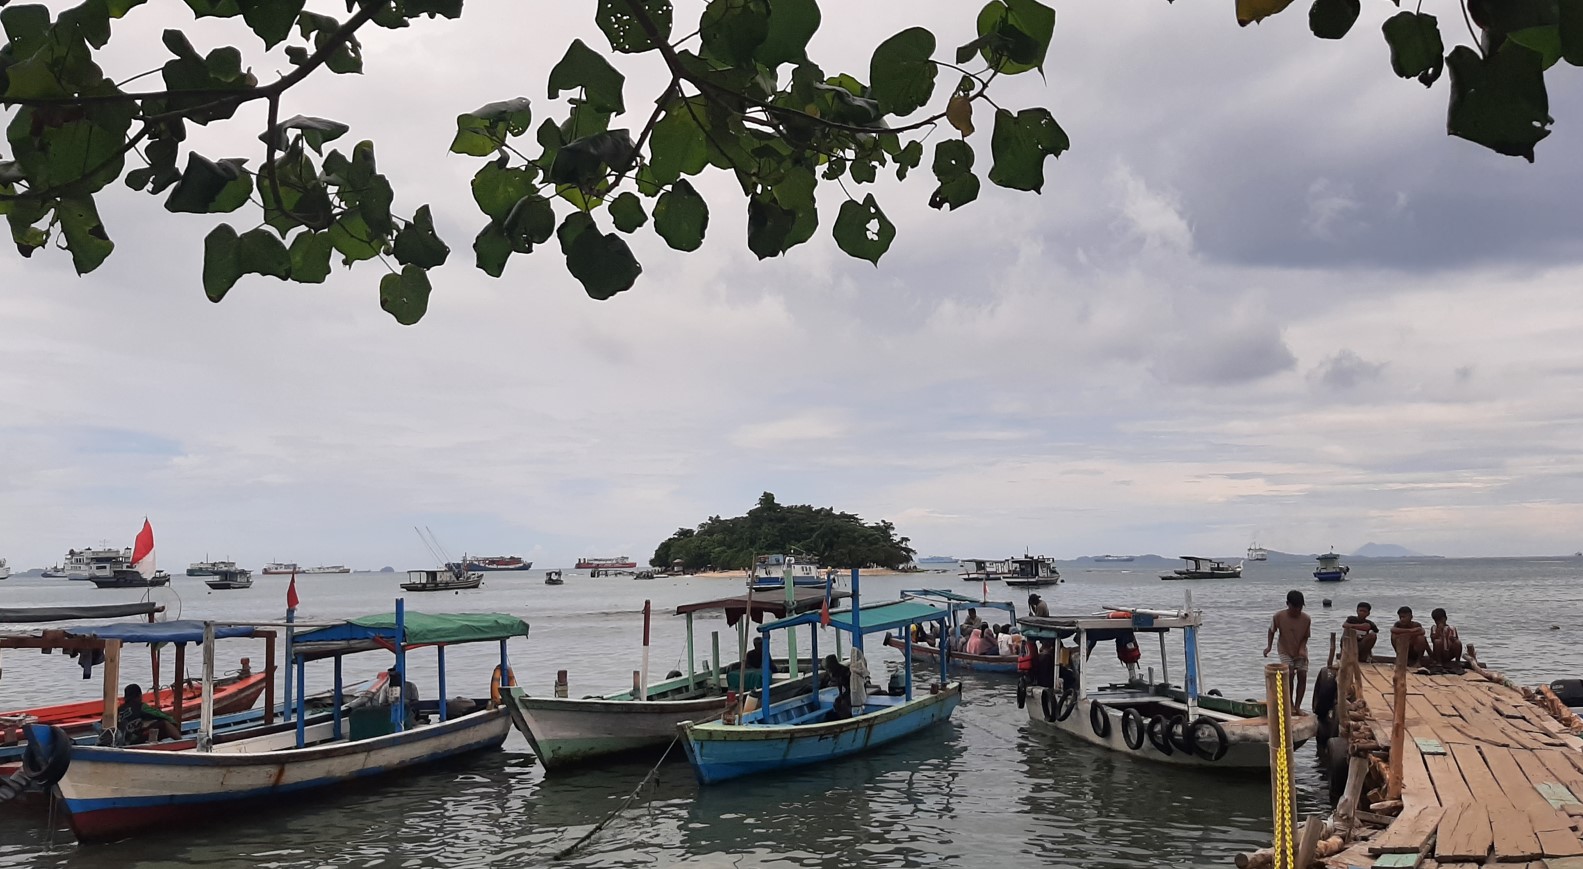 Daya Tarik Objek Wisata Pulau Merak Kecil di Mekarsari Cilegon Banten